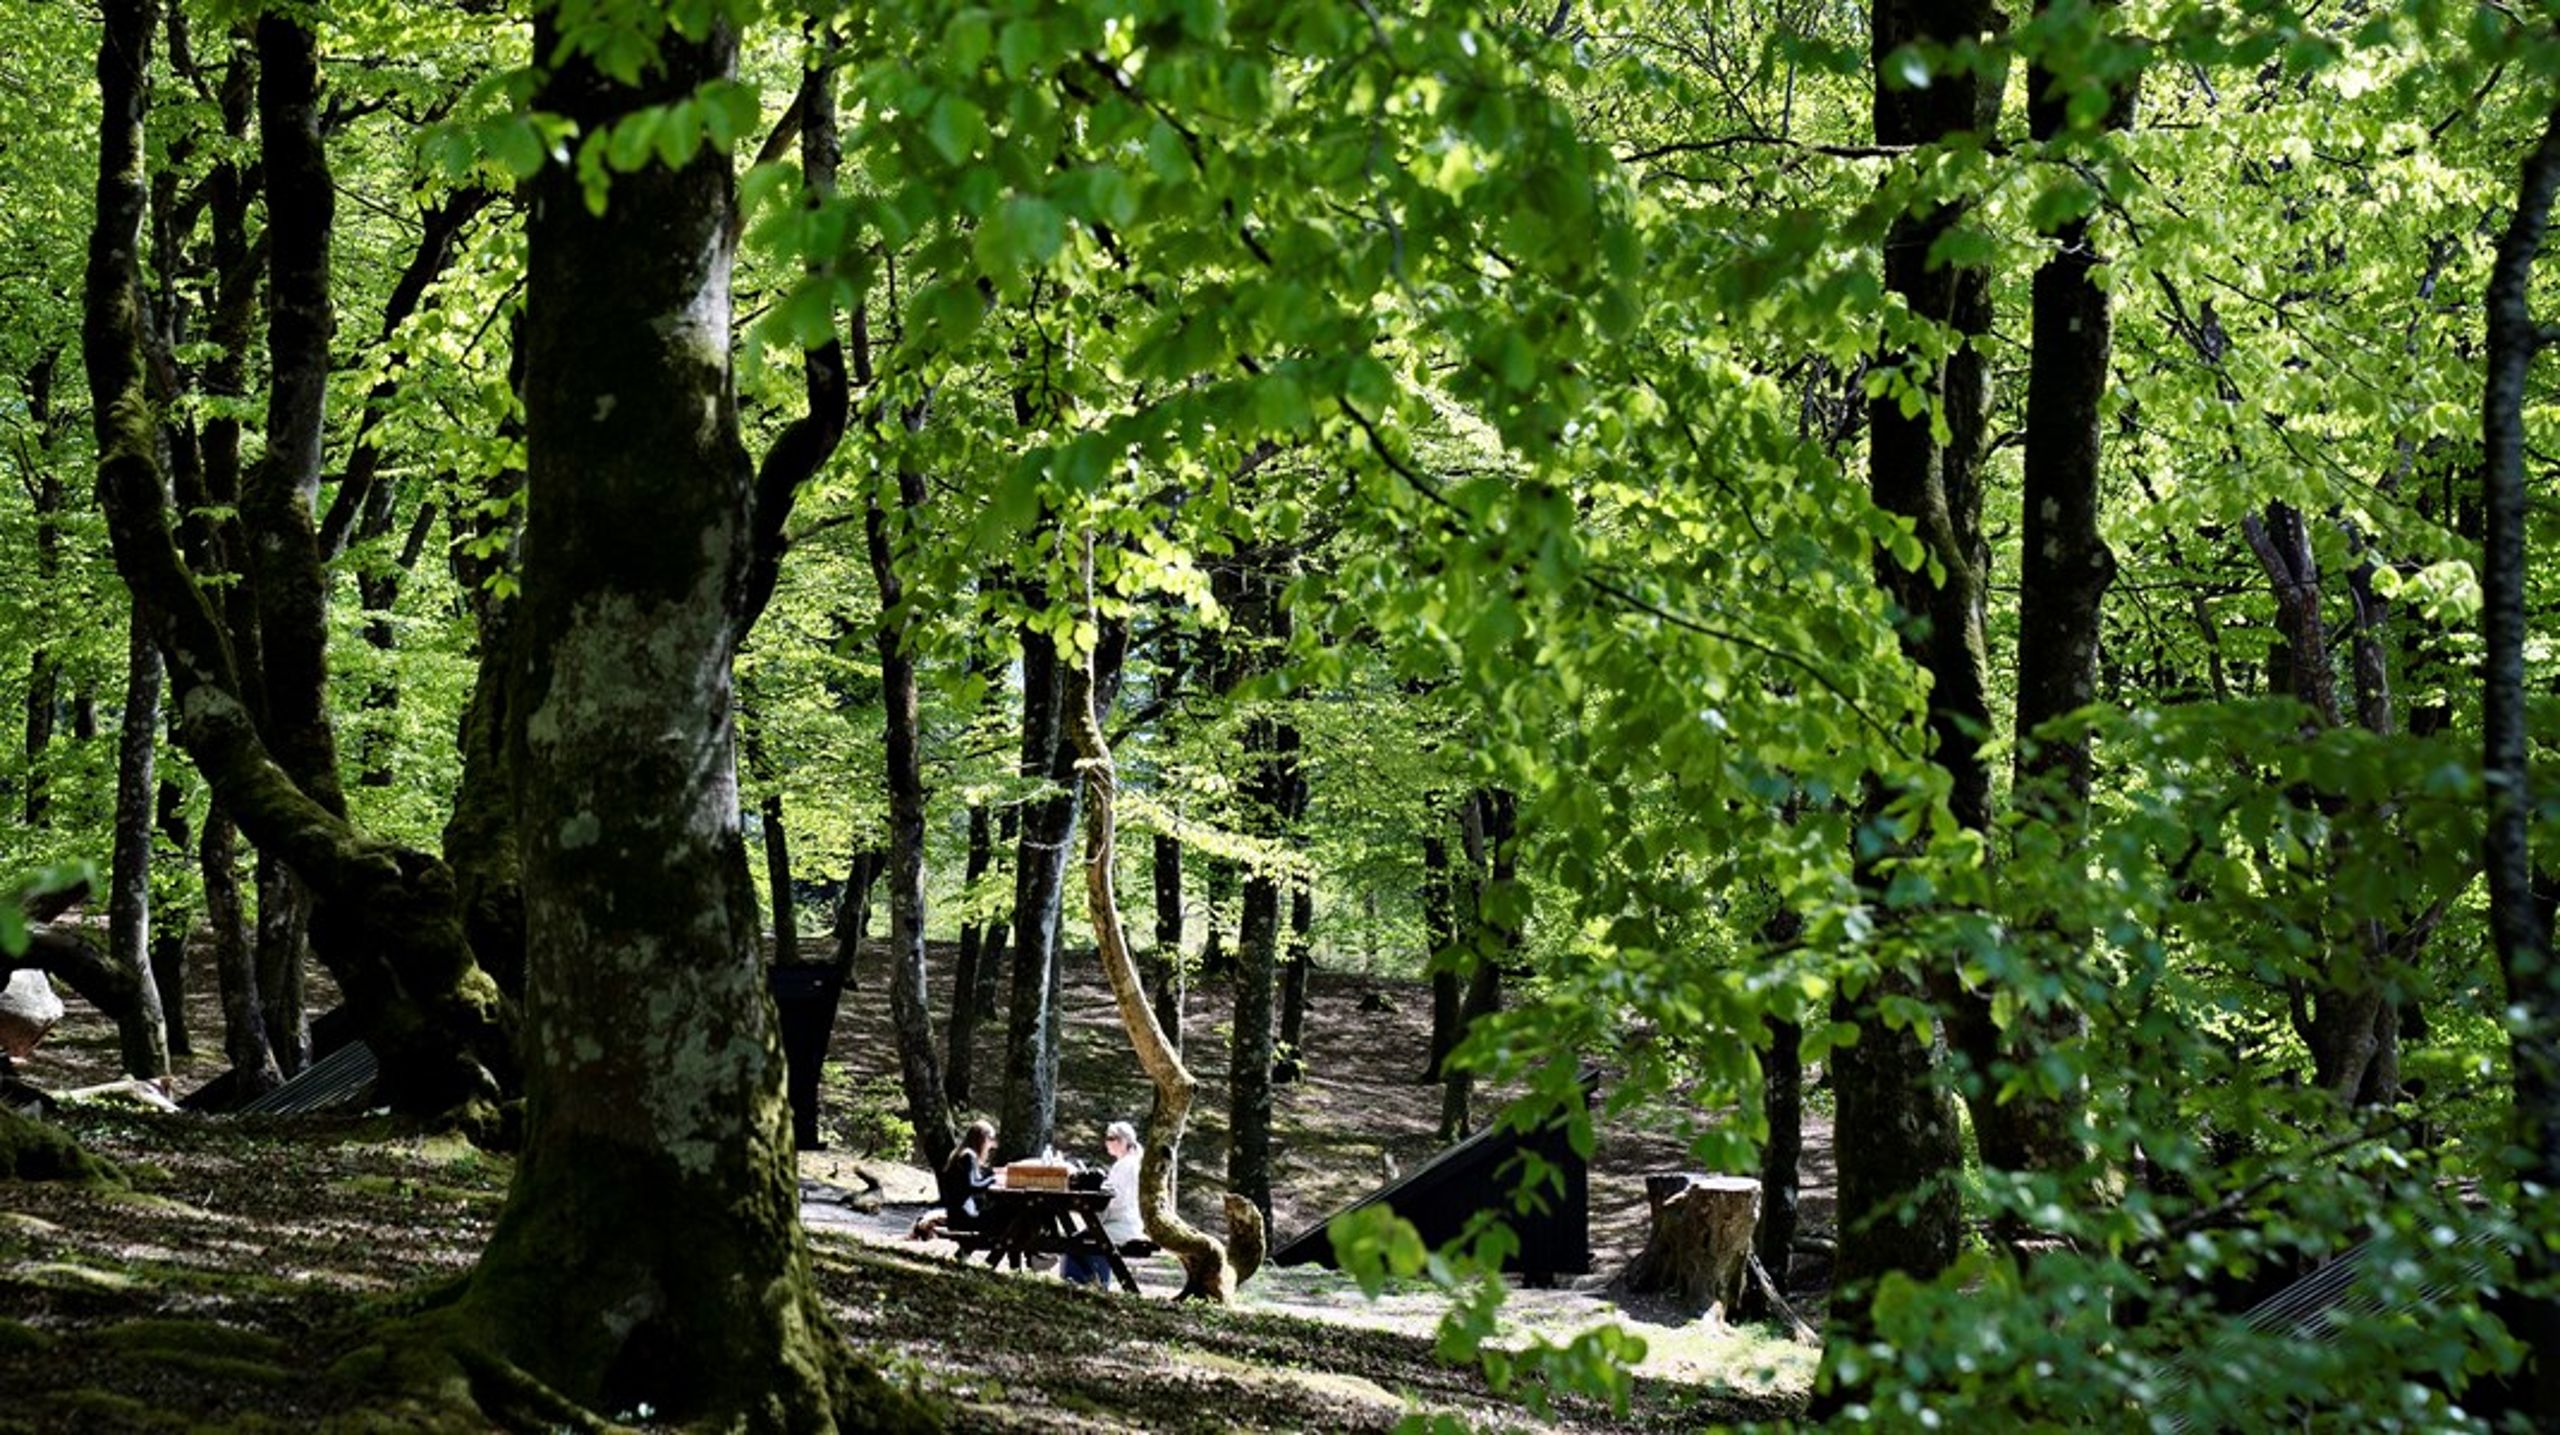 87 procent af danskerne er tilfredse eller meget tilfredse med den eksisterende adgang til skoven, men det er&nbsp;informationsindsatsen, der halter, skriver Anders Frandsen